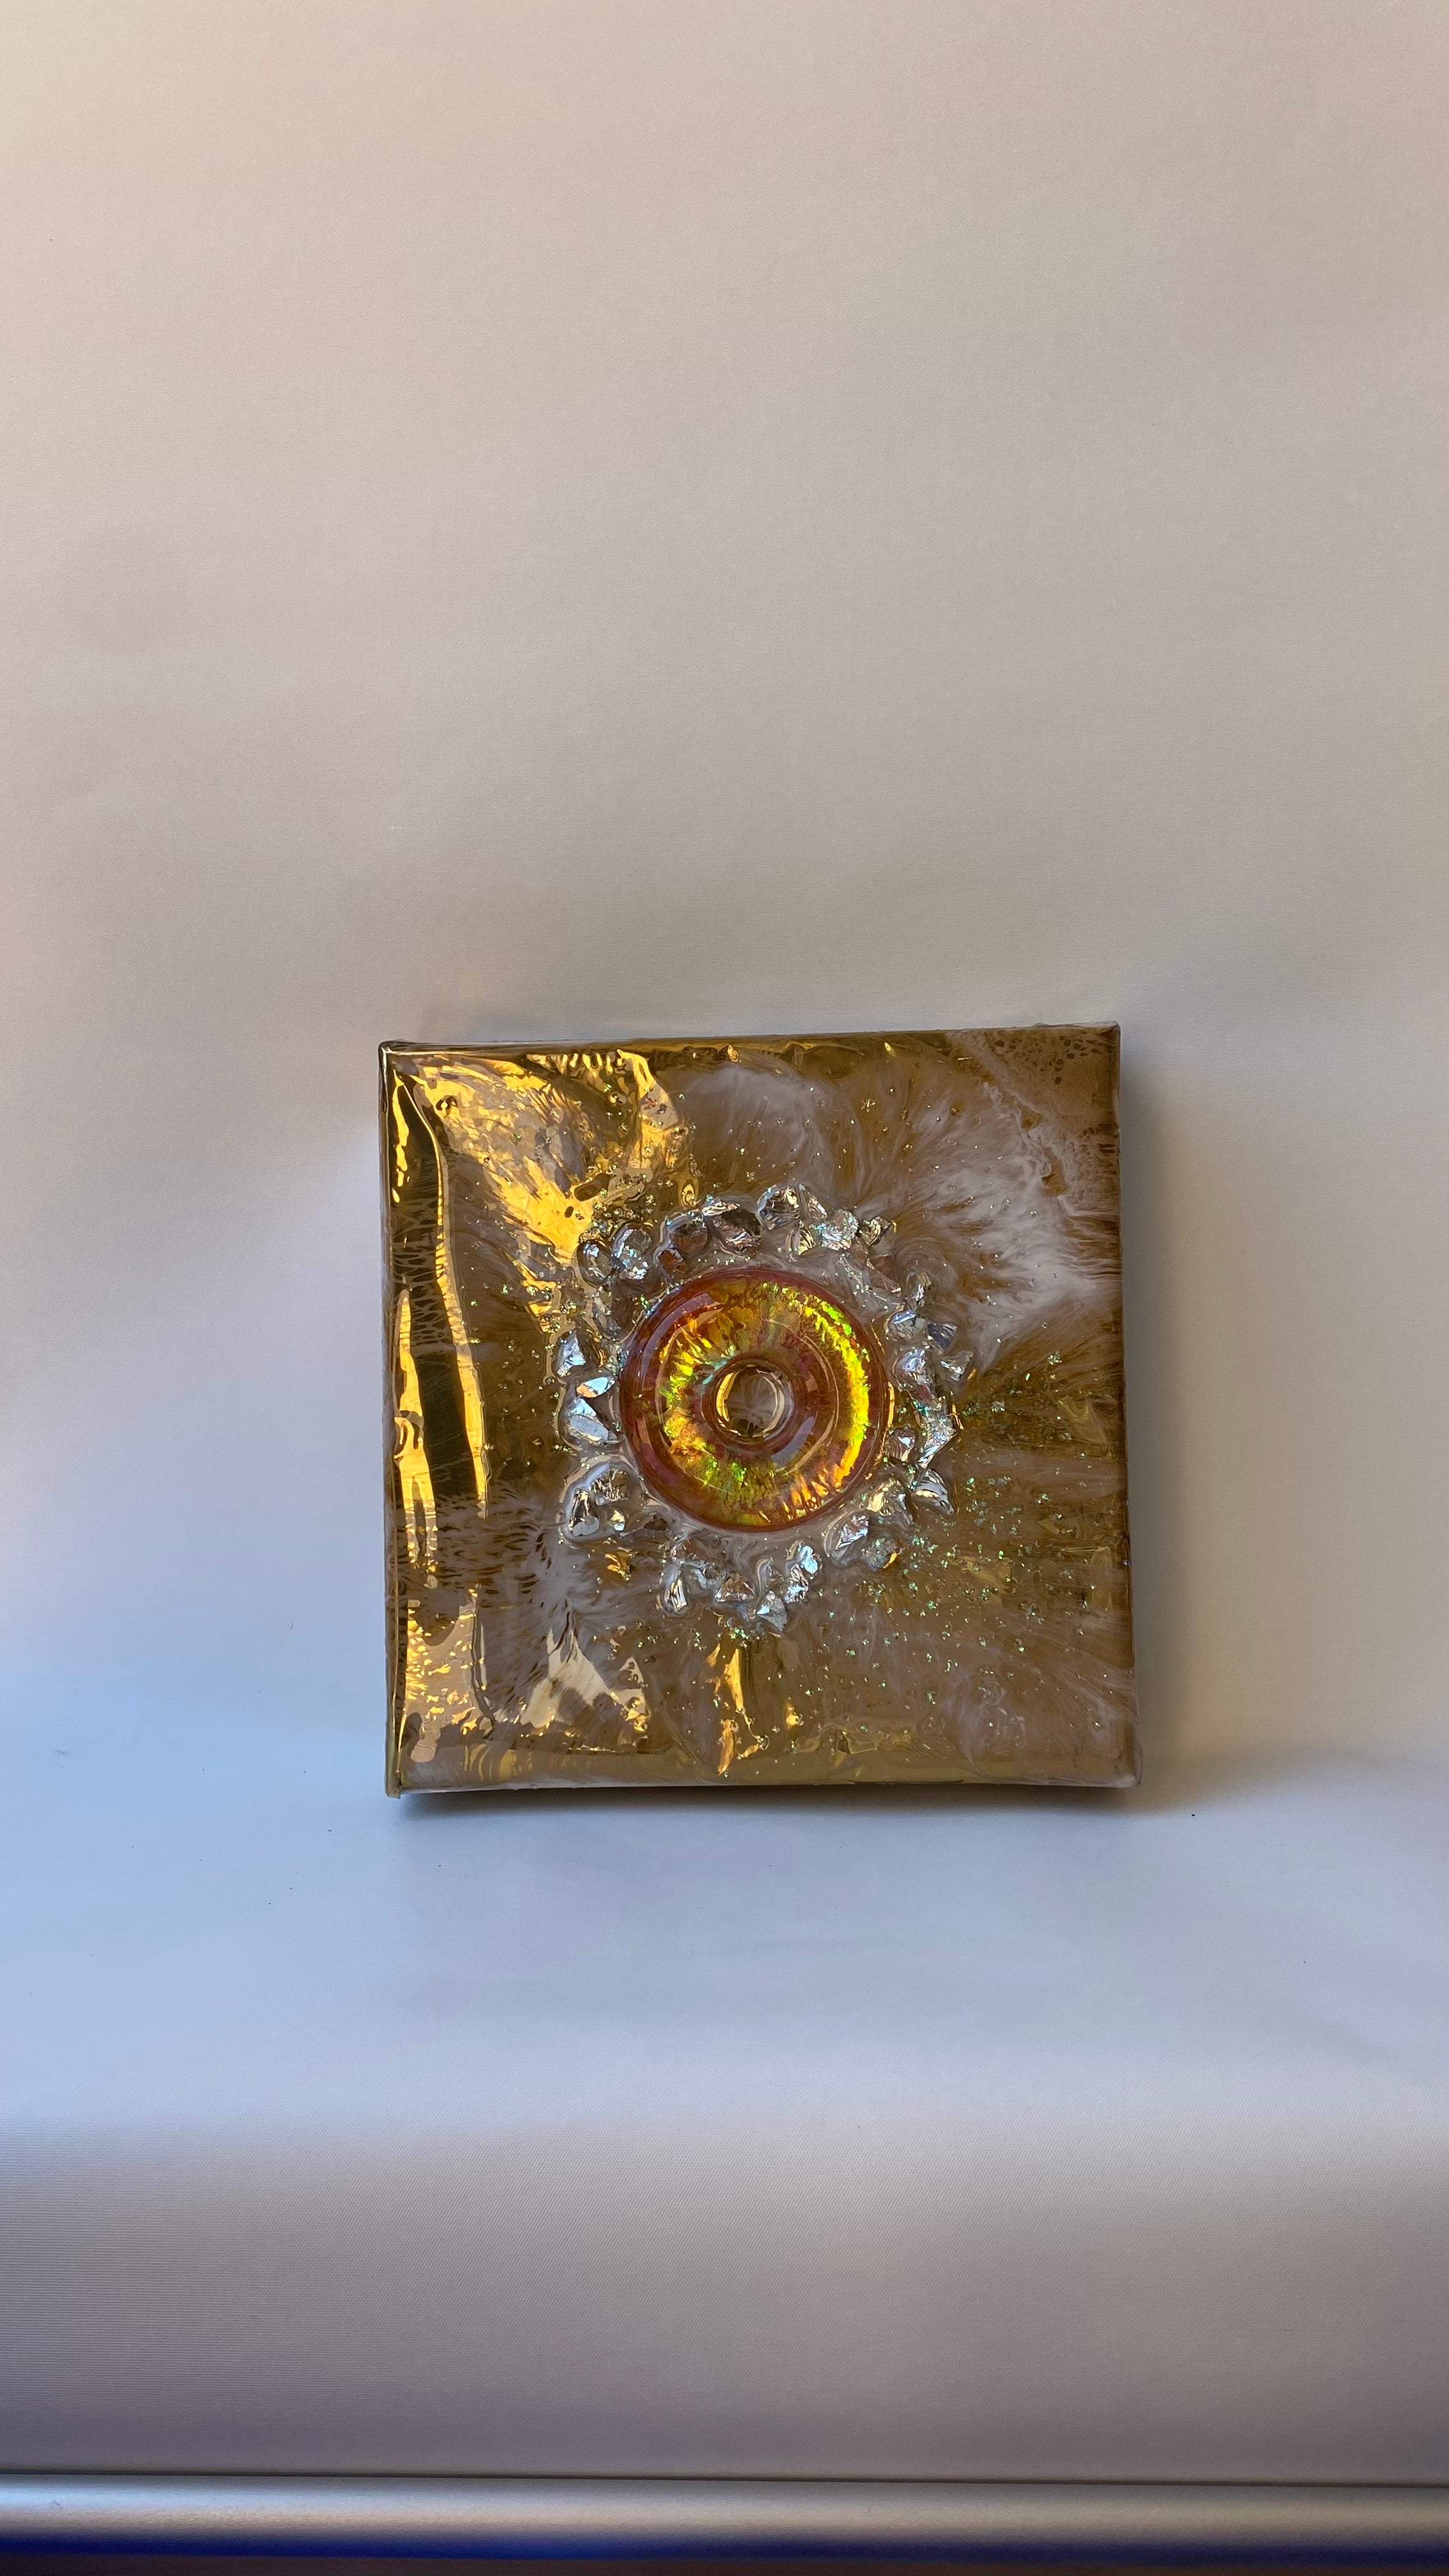 Gold Dazzling xmass doughnut mini artwork - Xmas Gift Idea